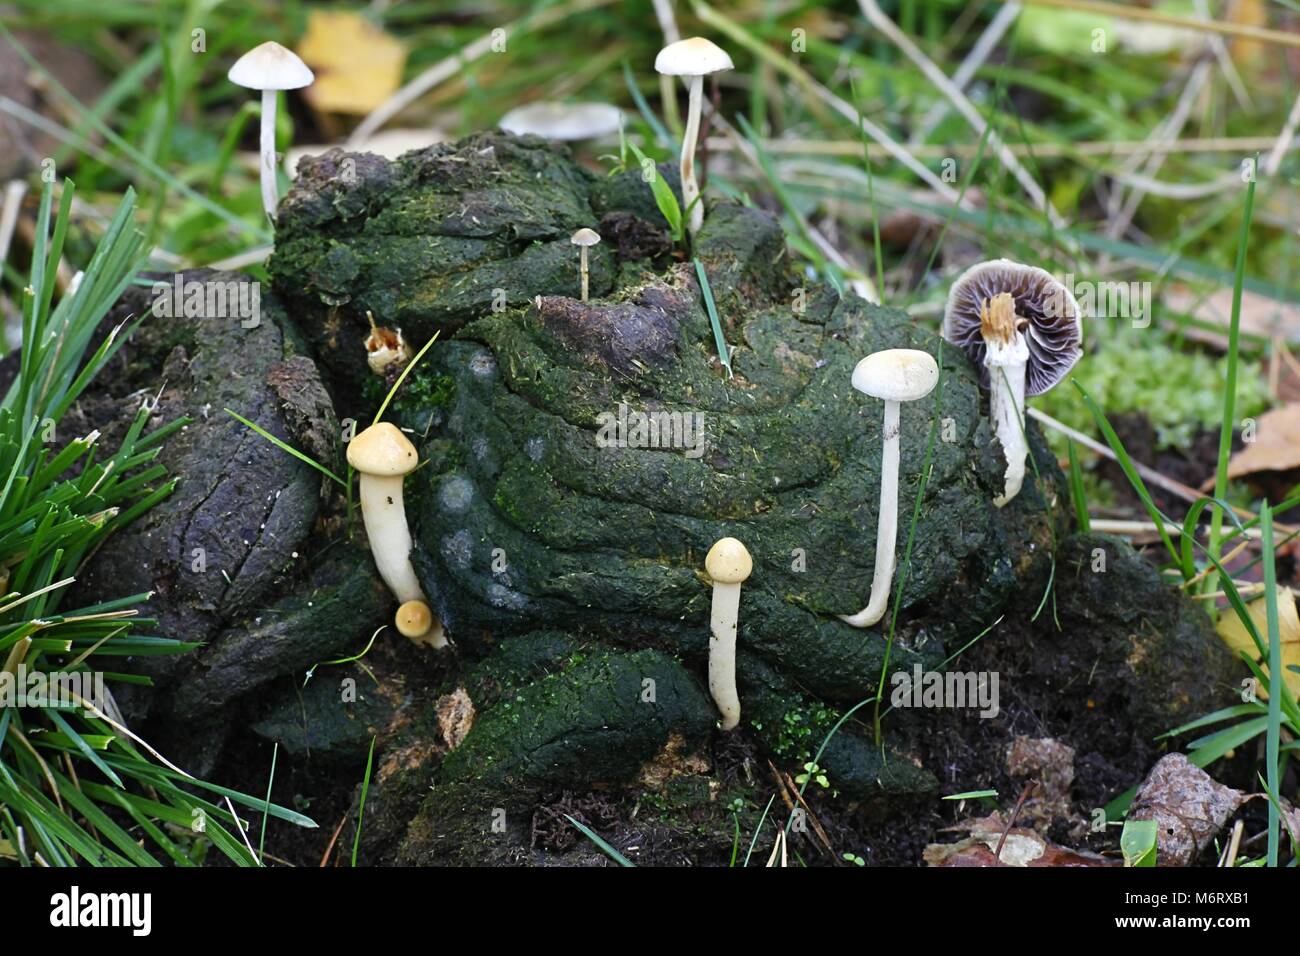 Magic mushroom, also called the halfglobe mushroom, Psilocybe semiglobata Stock Photo